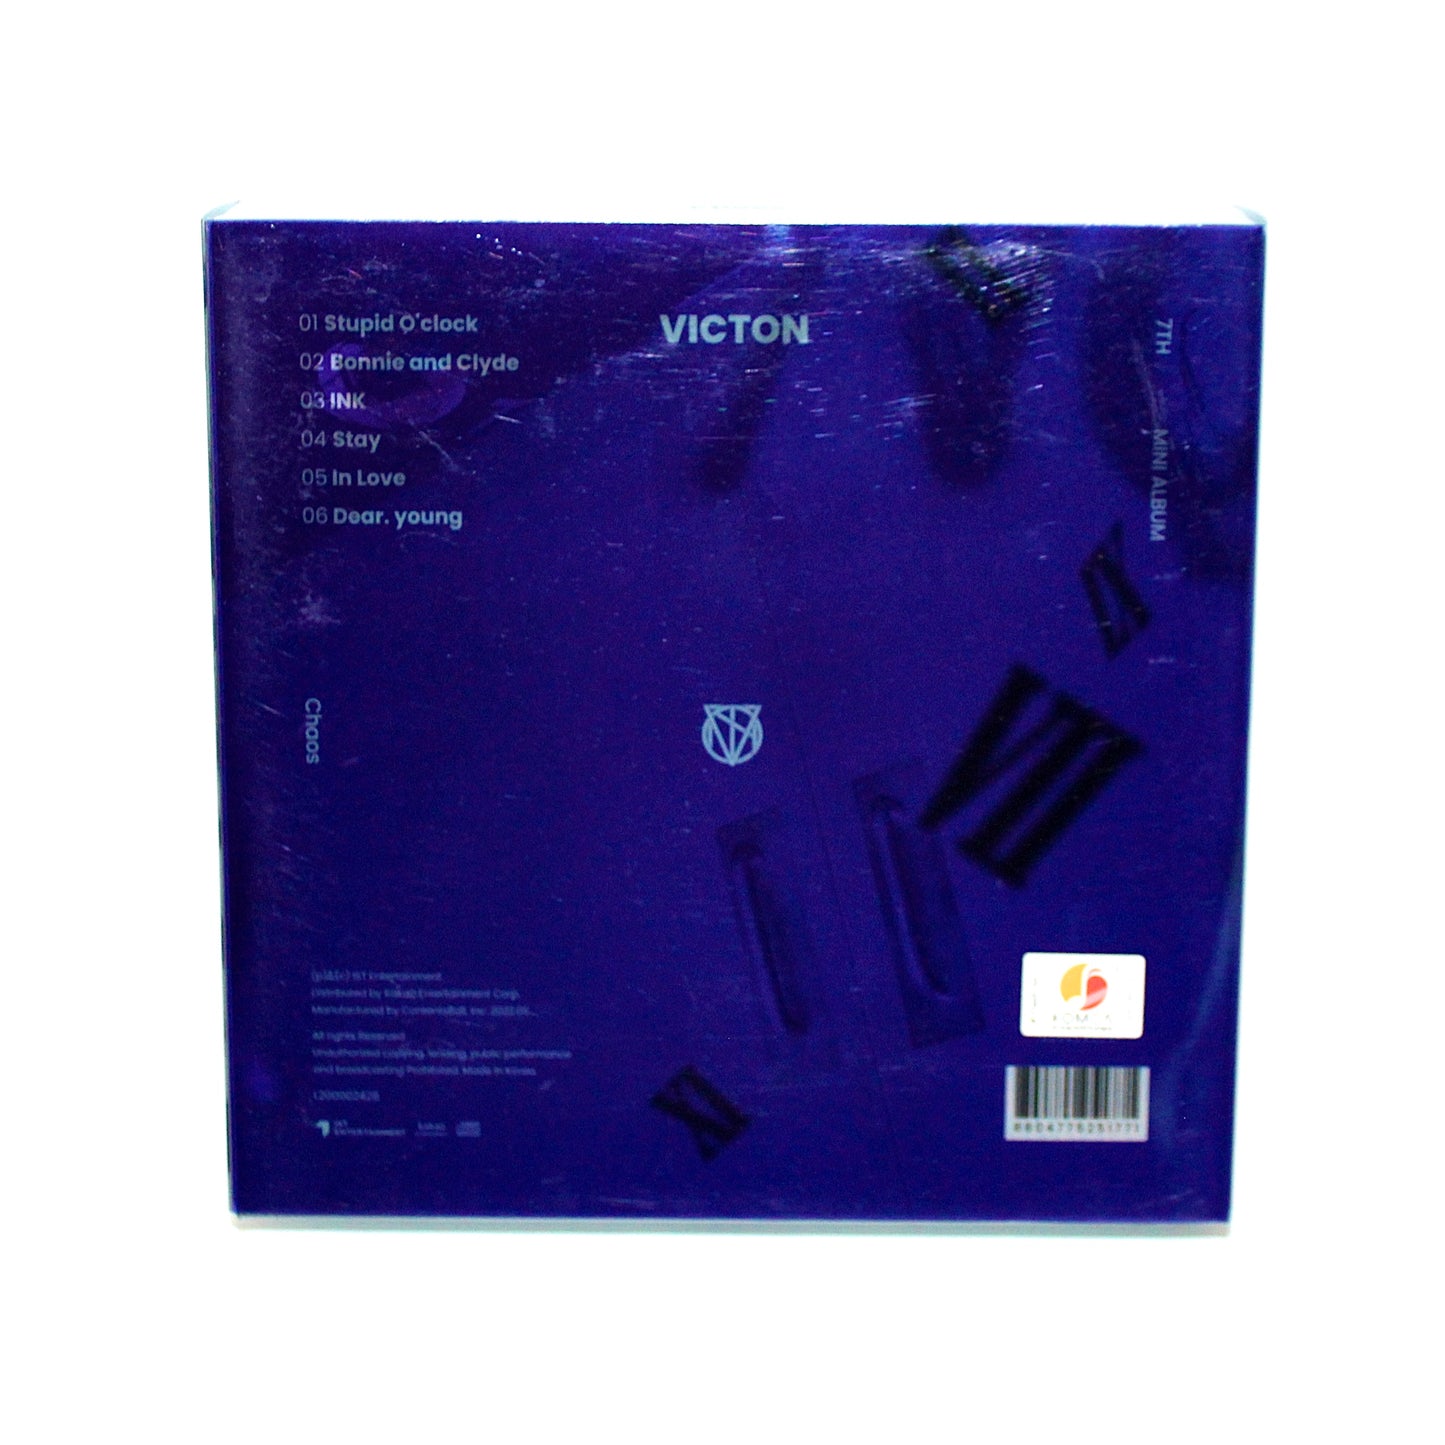 VICTON 7th Mini Album: Chaos | Control Ver.